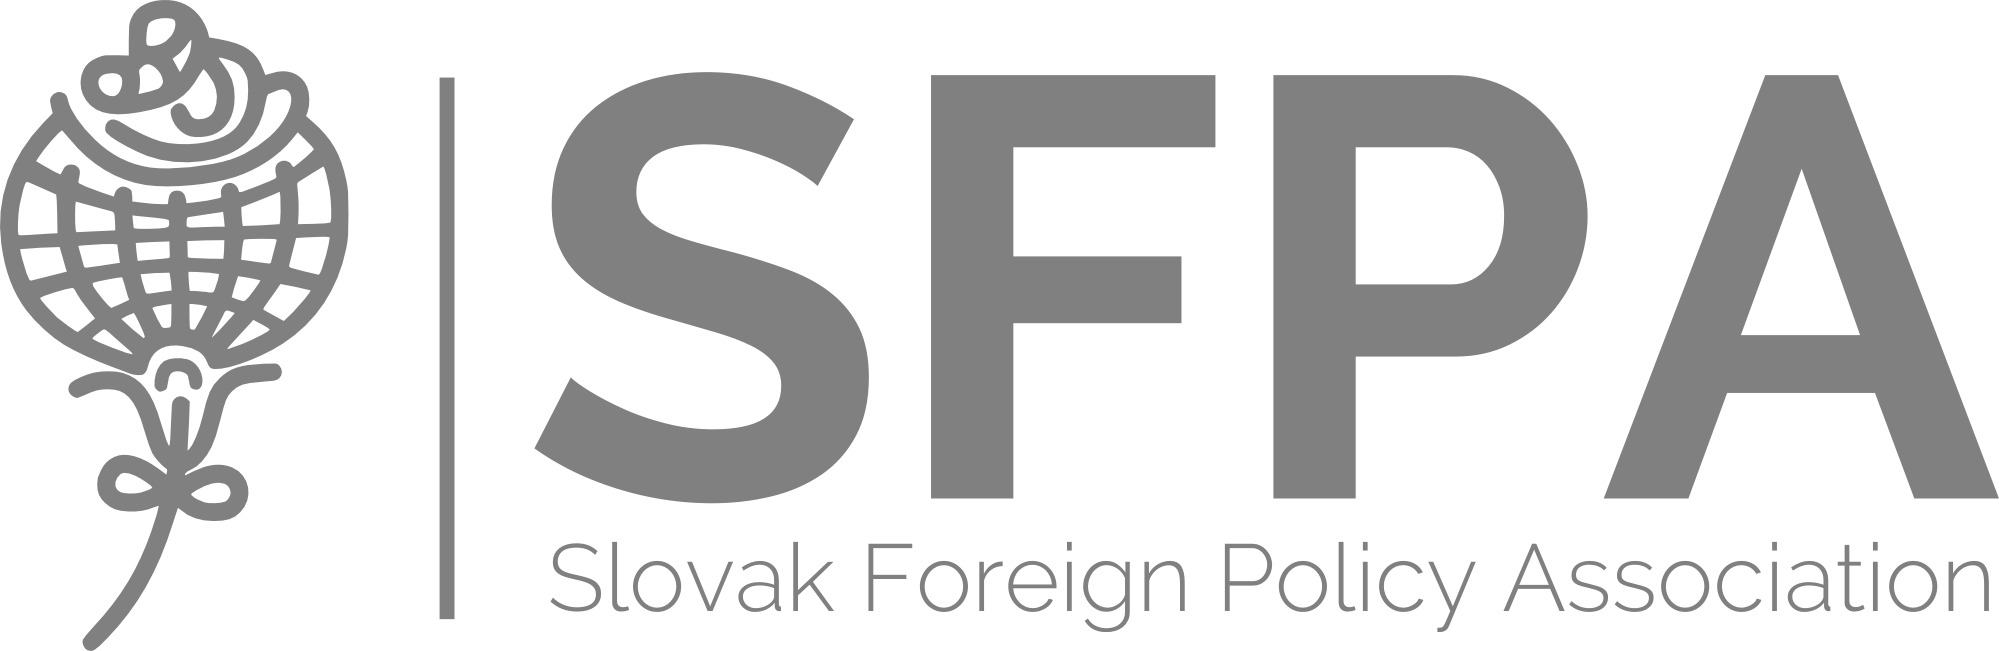 Výskumné centrum Slovenskej spoločnosti pre zahraničnú politiku